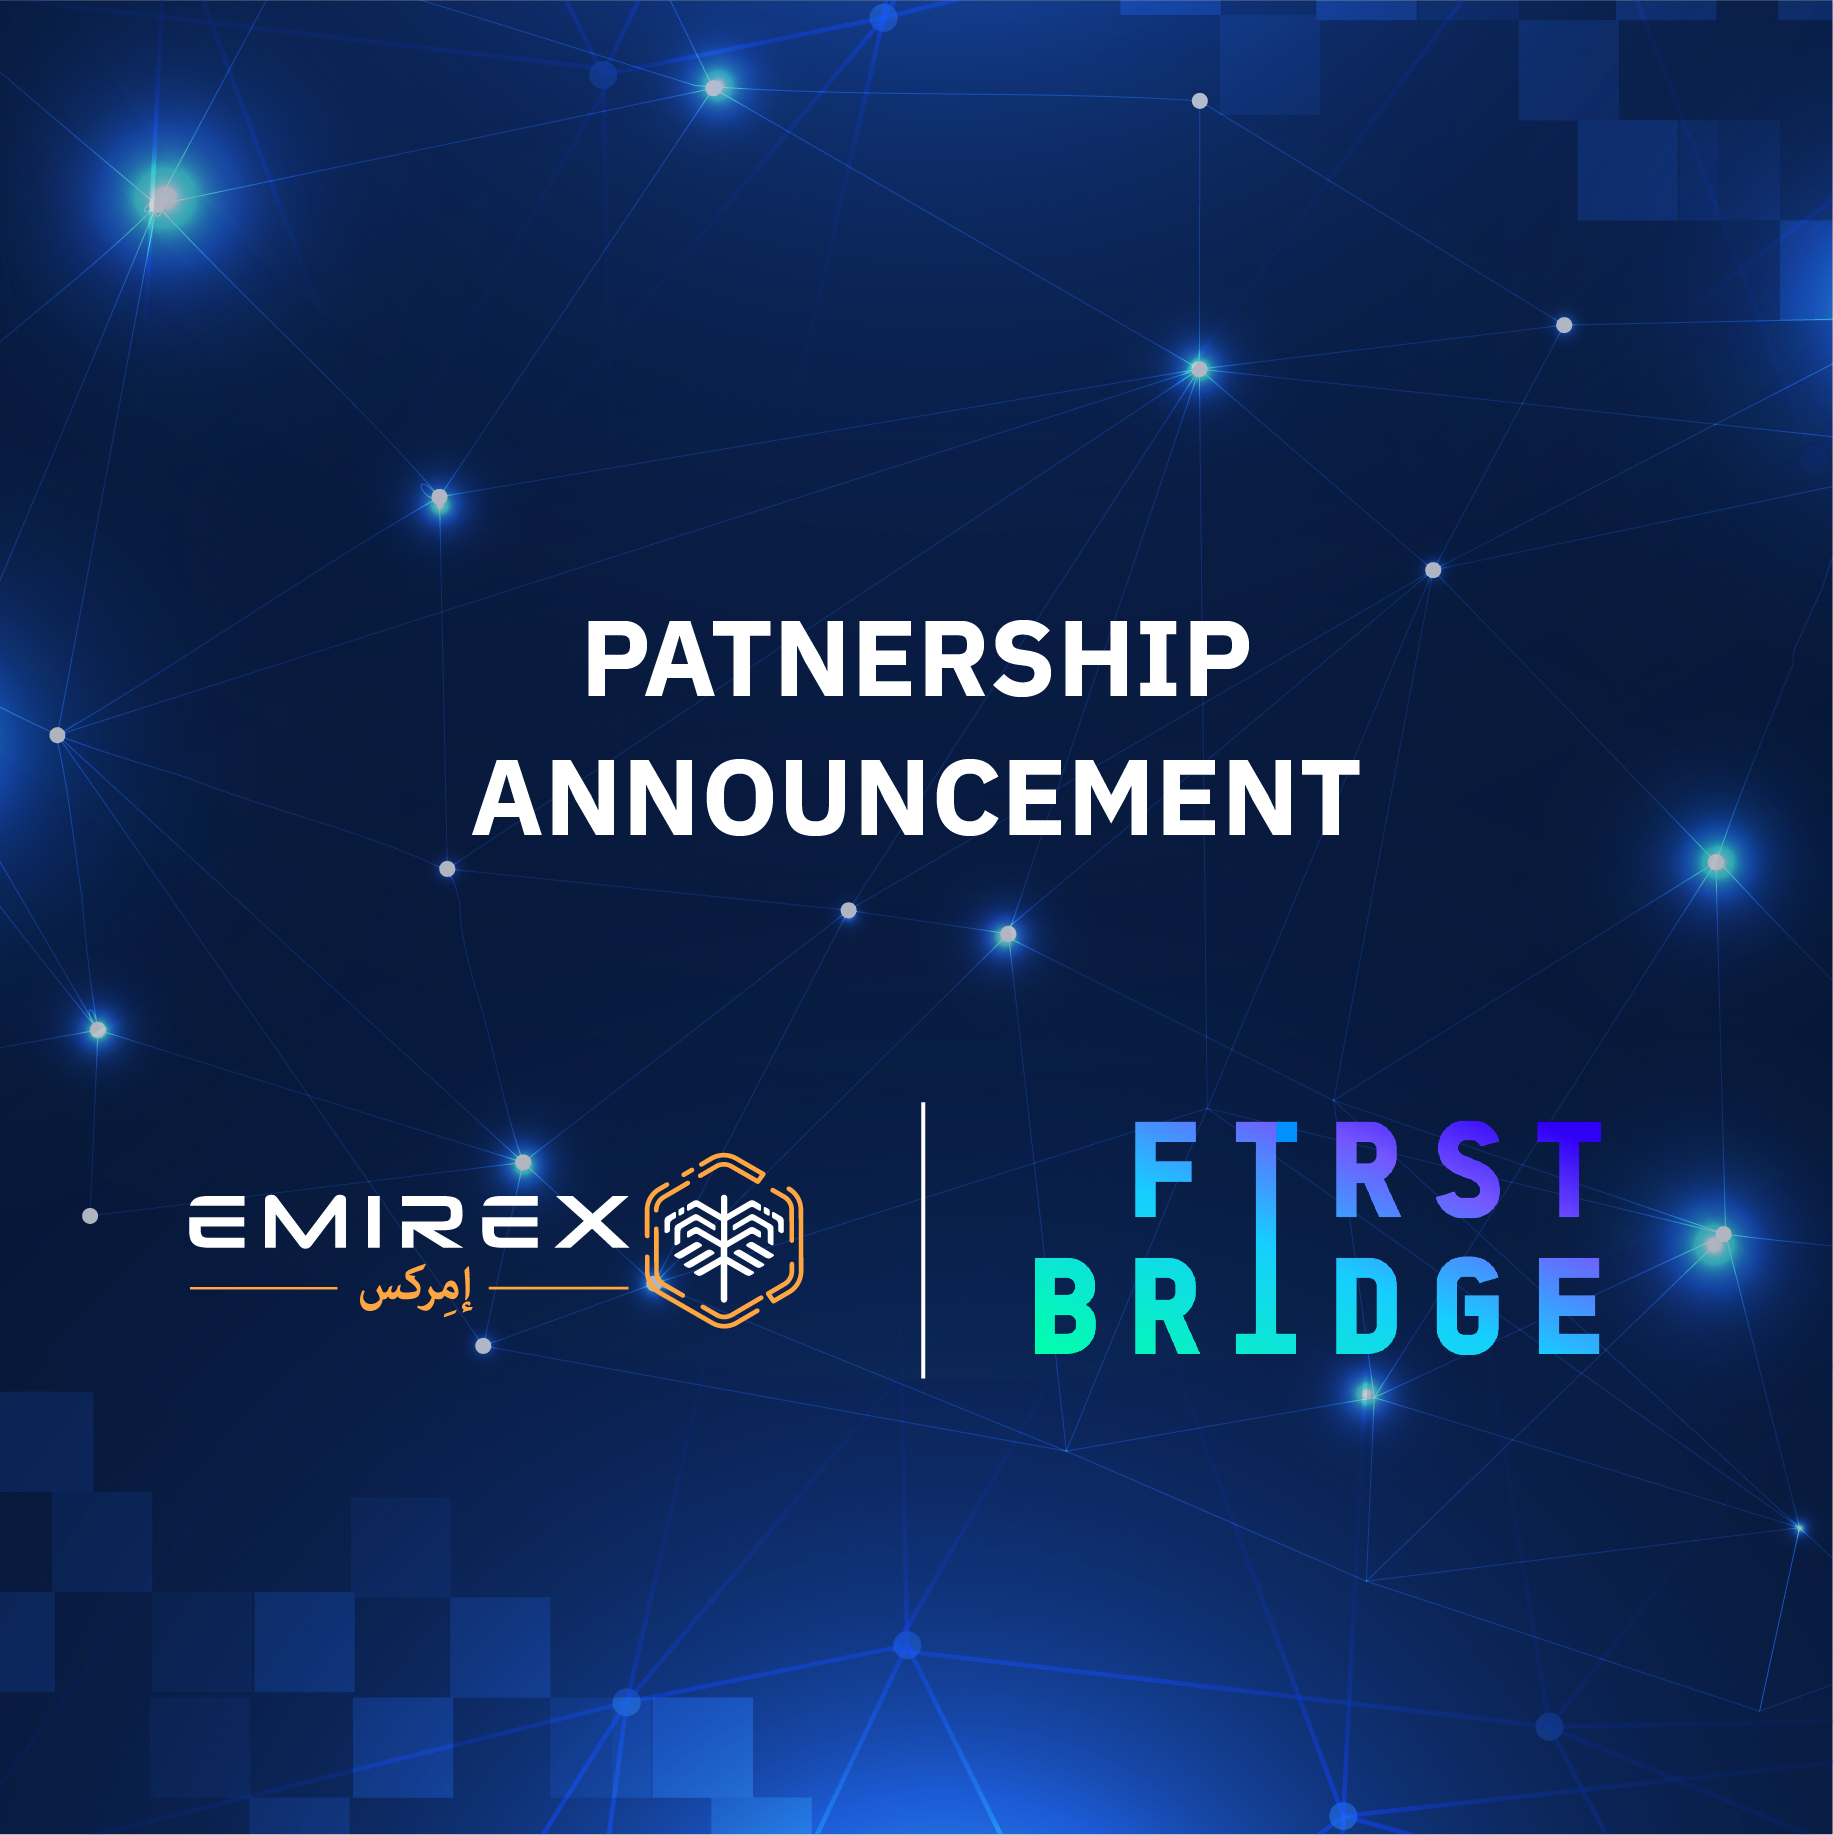 Emirex & First Bridge Partnership